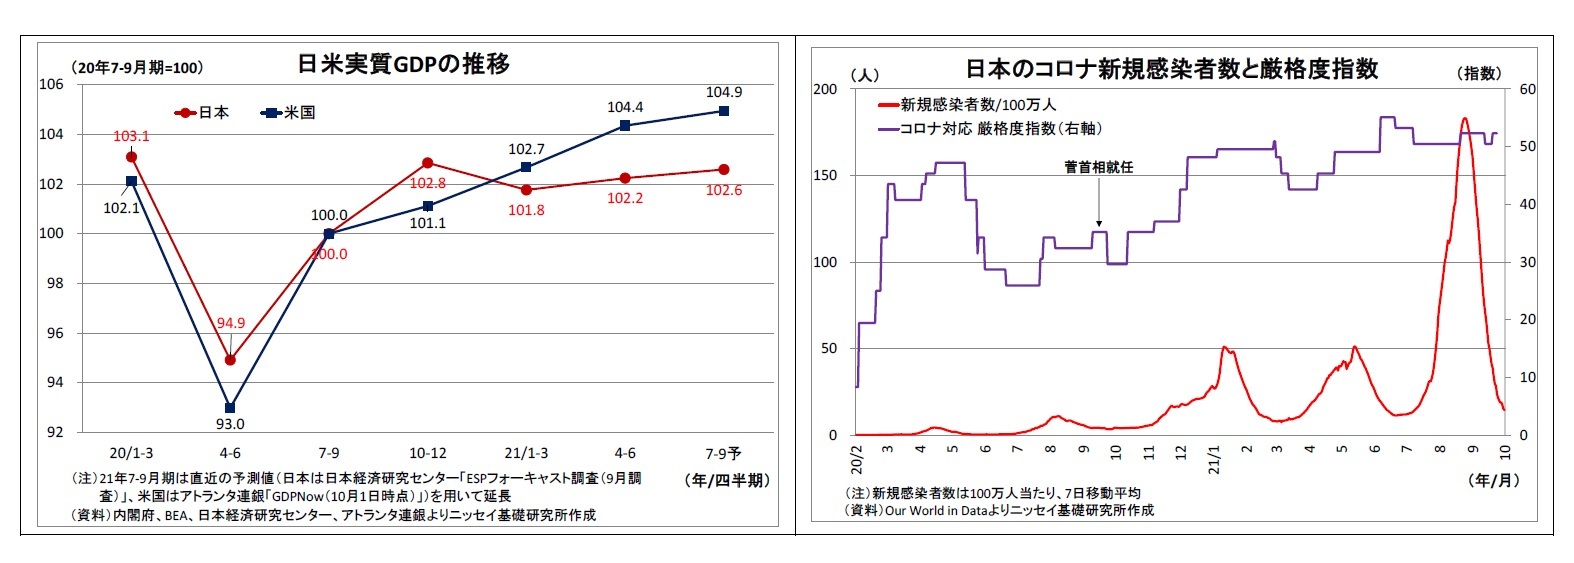 日米実質GDPの推移/日本のコロナ新規感染者数と厳格度指数